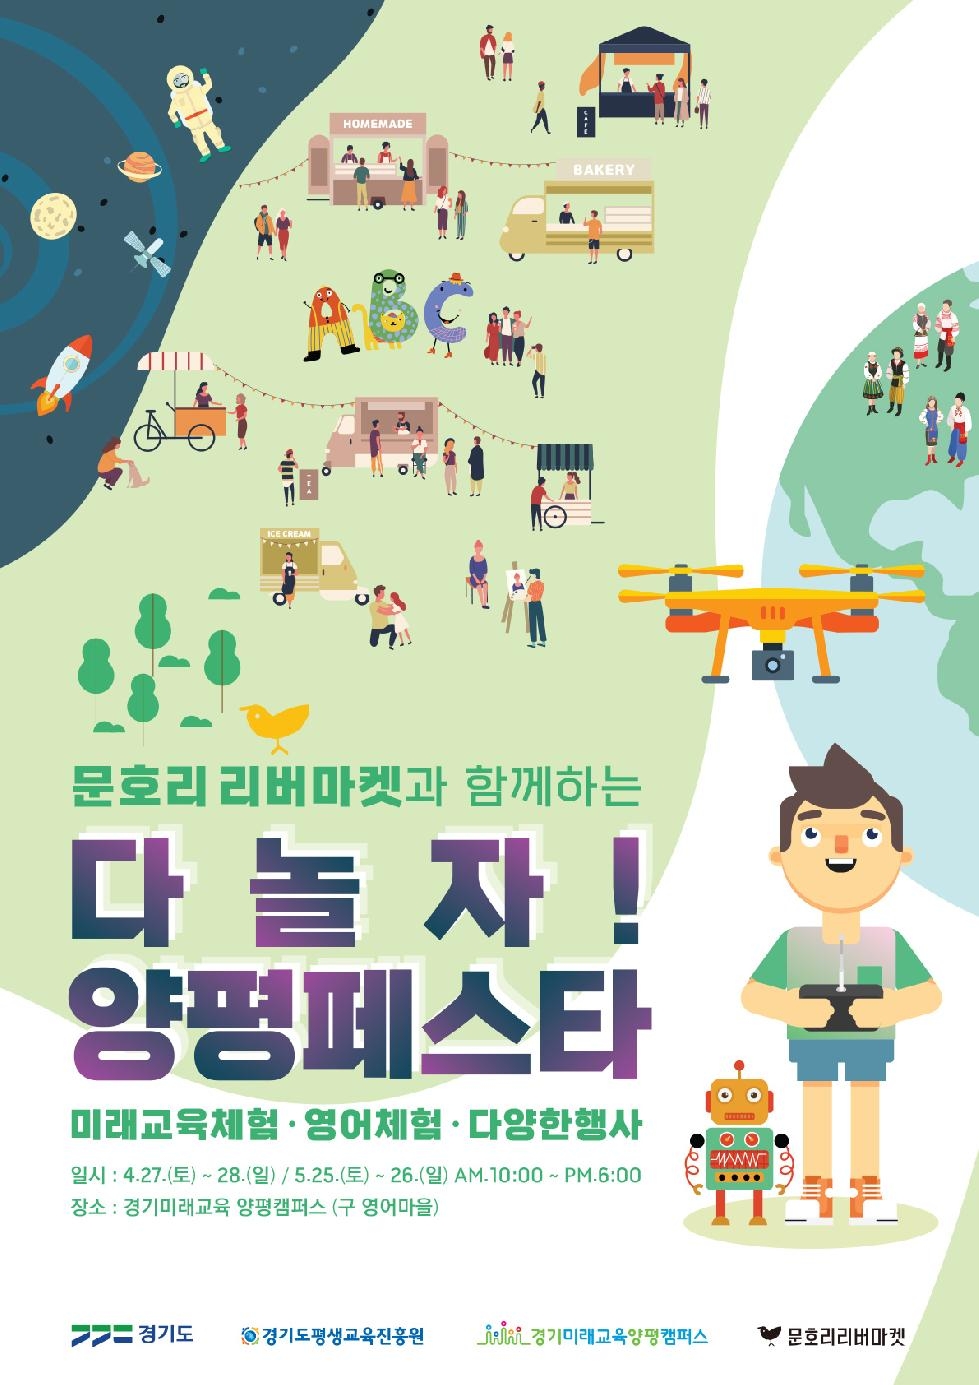 경기도, 경기미래교육 양평캠퍼스에서 ‘다놀자! 양평 페스타’ 개최